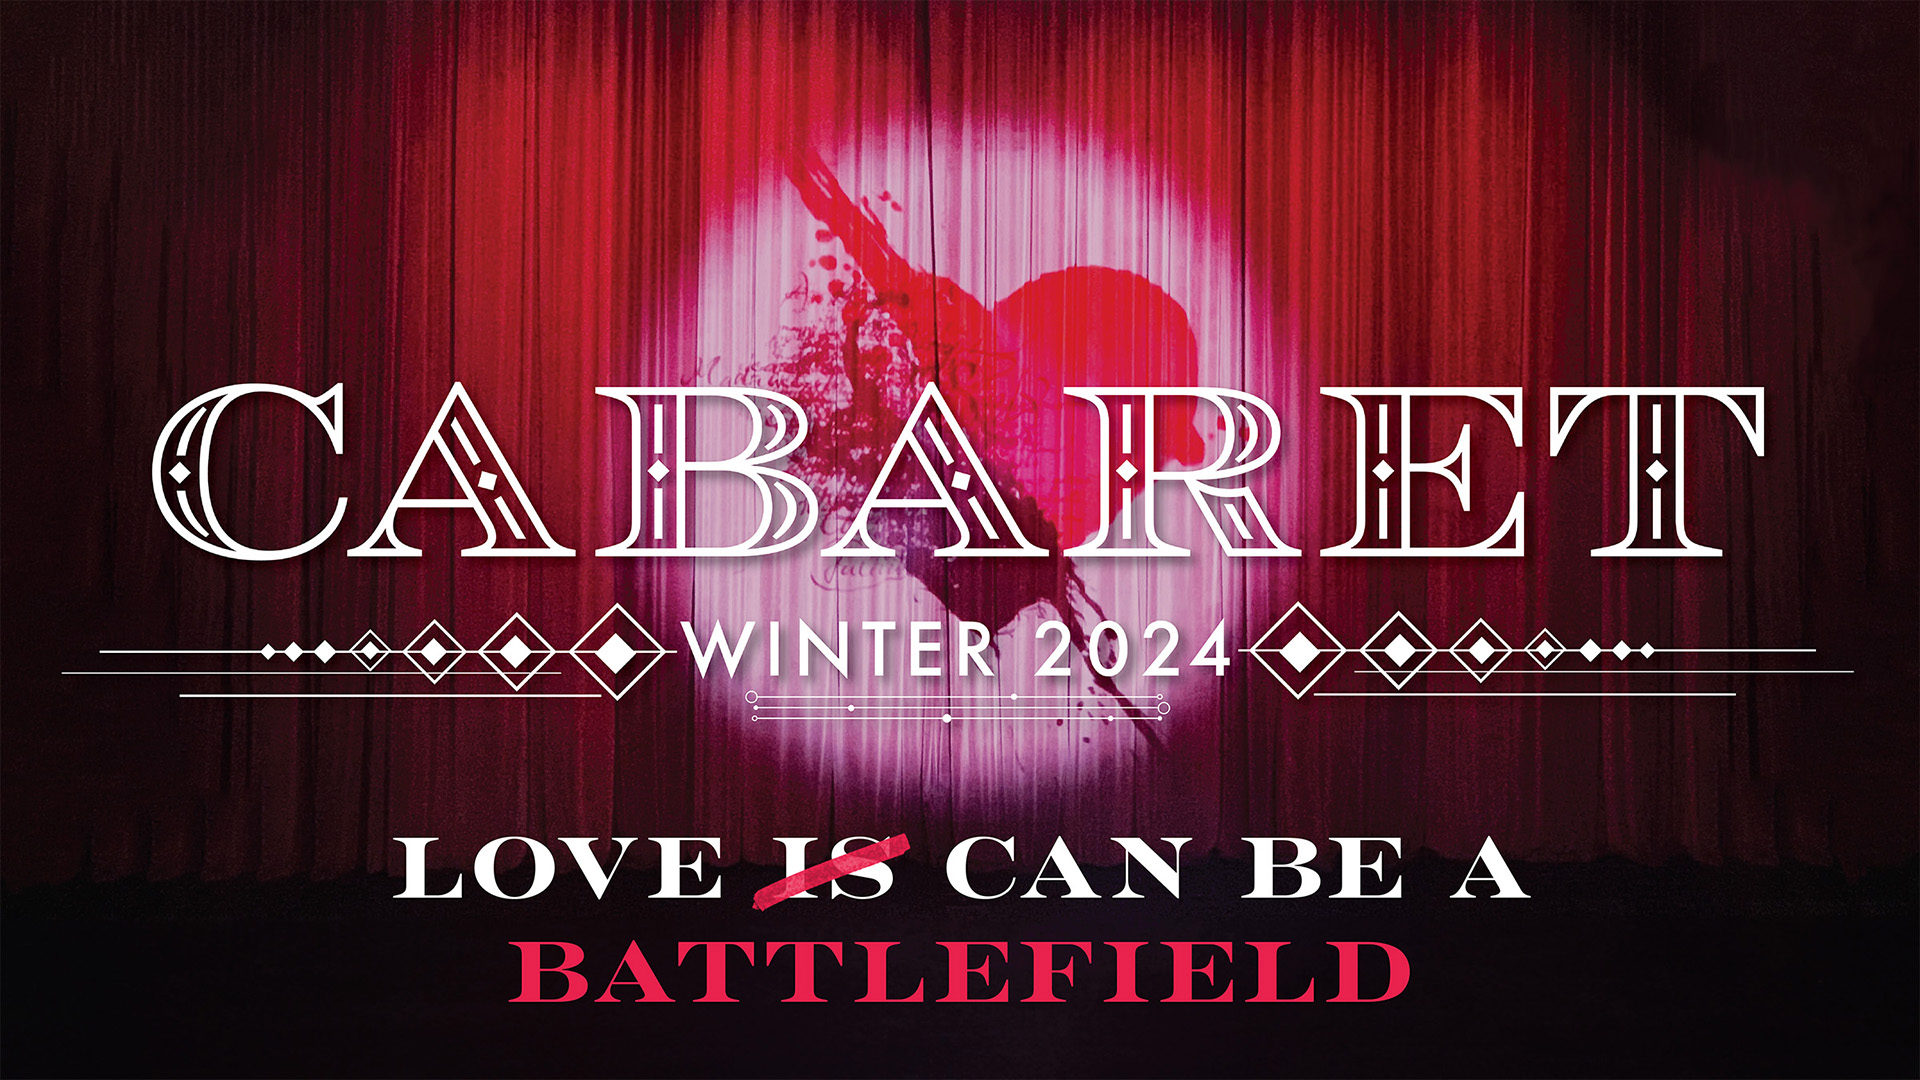 Cabaret, winter 2024. Love Can Be a Battlefield.